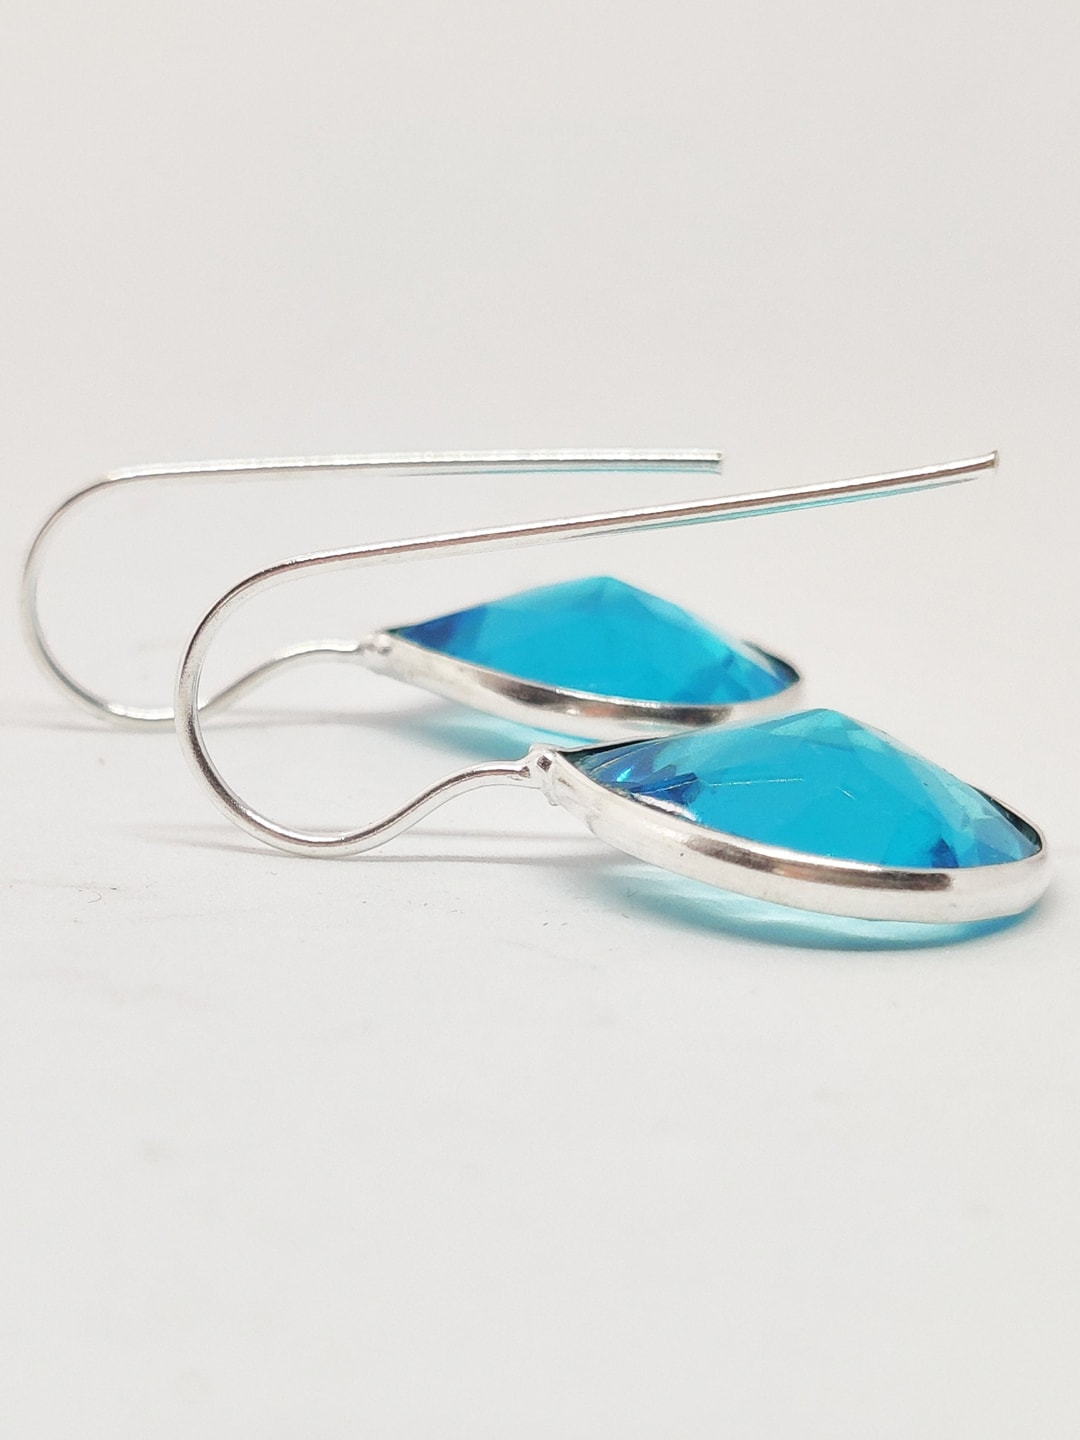 EL REGALO Blue Teardrop Shaped Studs Earrings - for Women and Girls
Style ID: 16851562